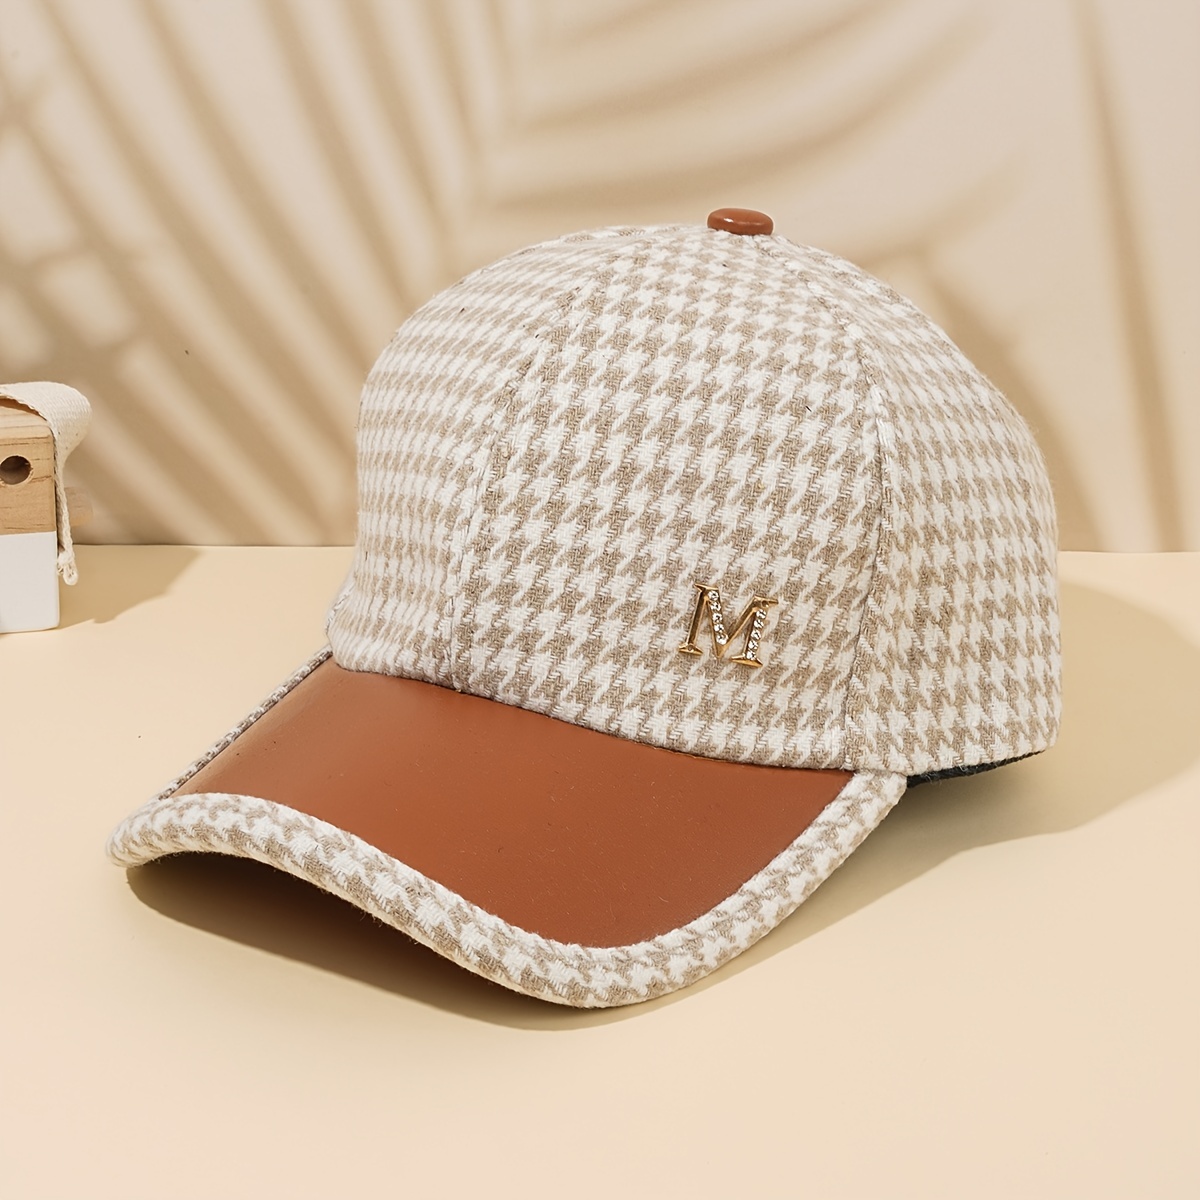 Louis Vuitton Hat for Women -  Australia